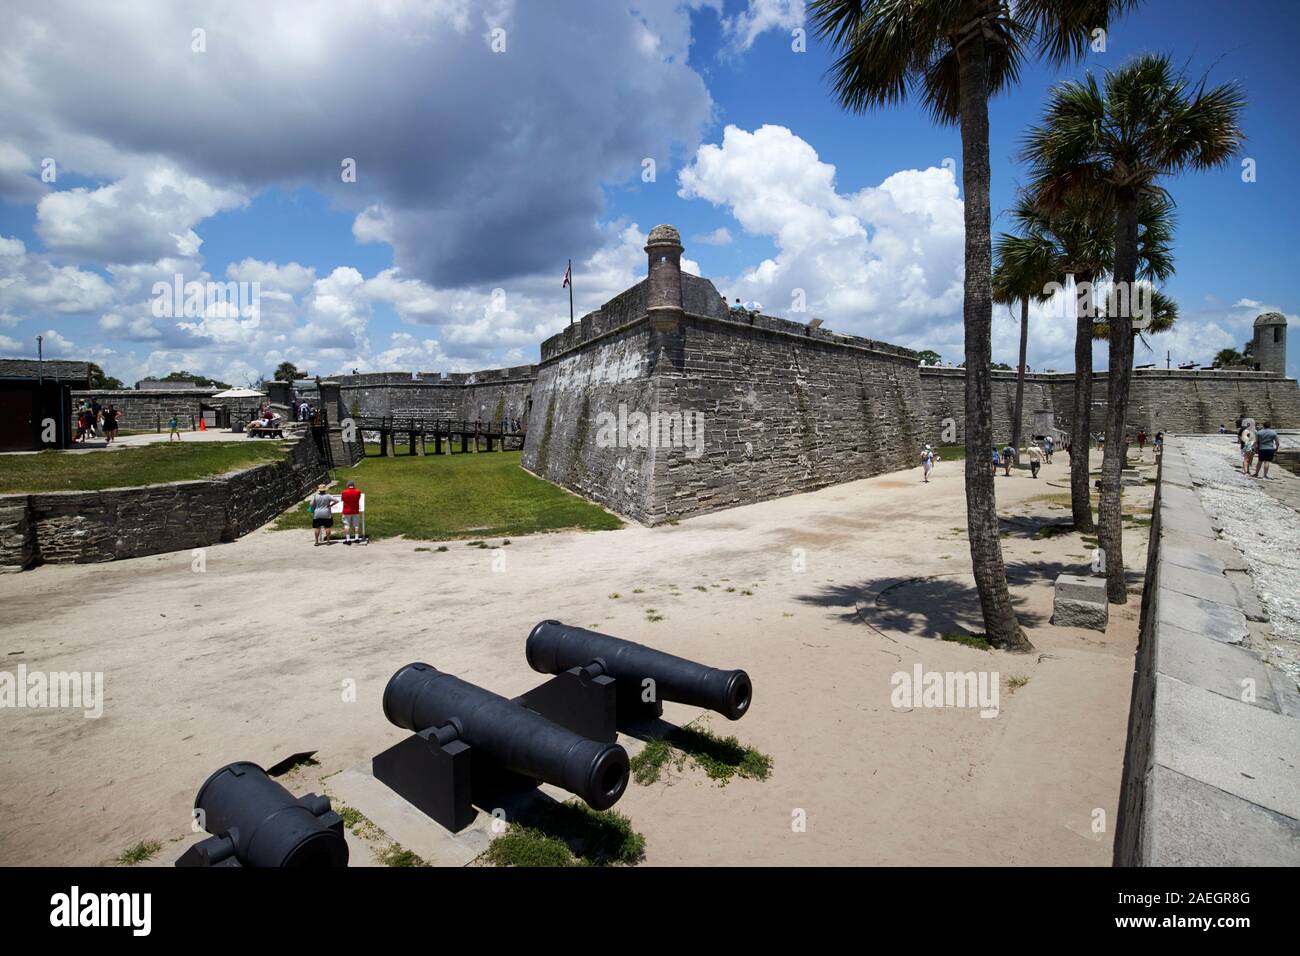 L'eau du troisième système batterie en dehors de Castillo de San Marcos fort marion pierre historique forteresse avec tour de St Augustine florida usa Banque D'Images